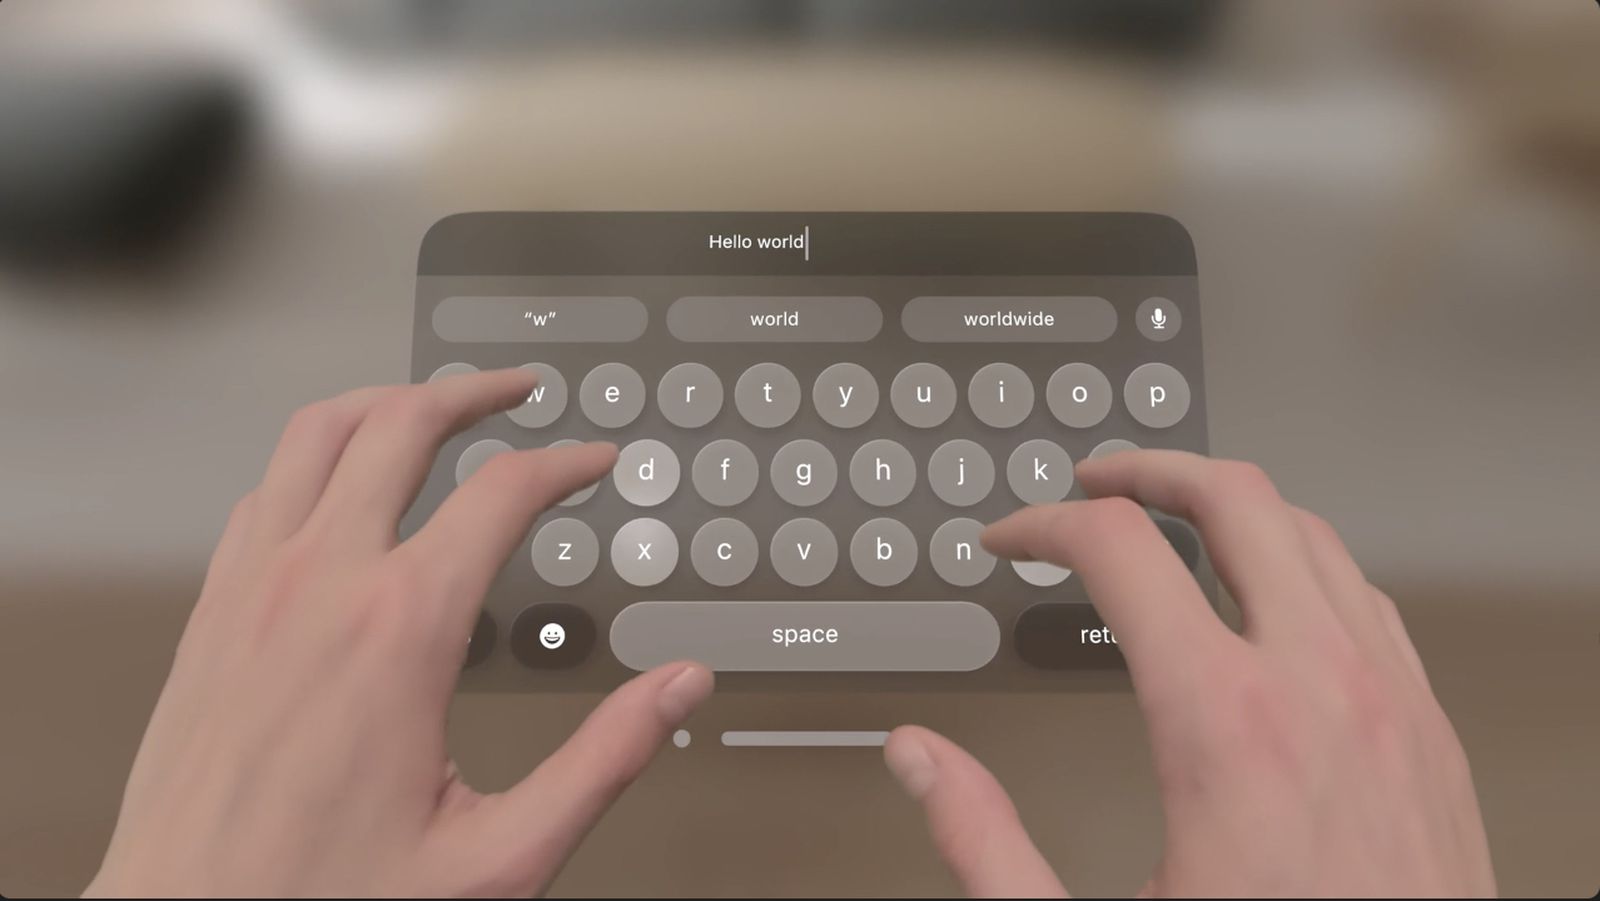 Wirtualna klawiatura Apple Vision Pro skrytykowana jako „całkowita porażka”